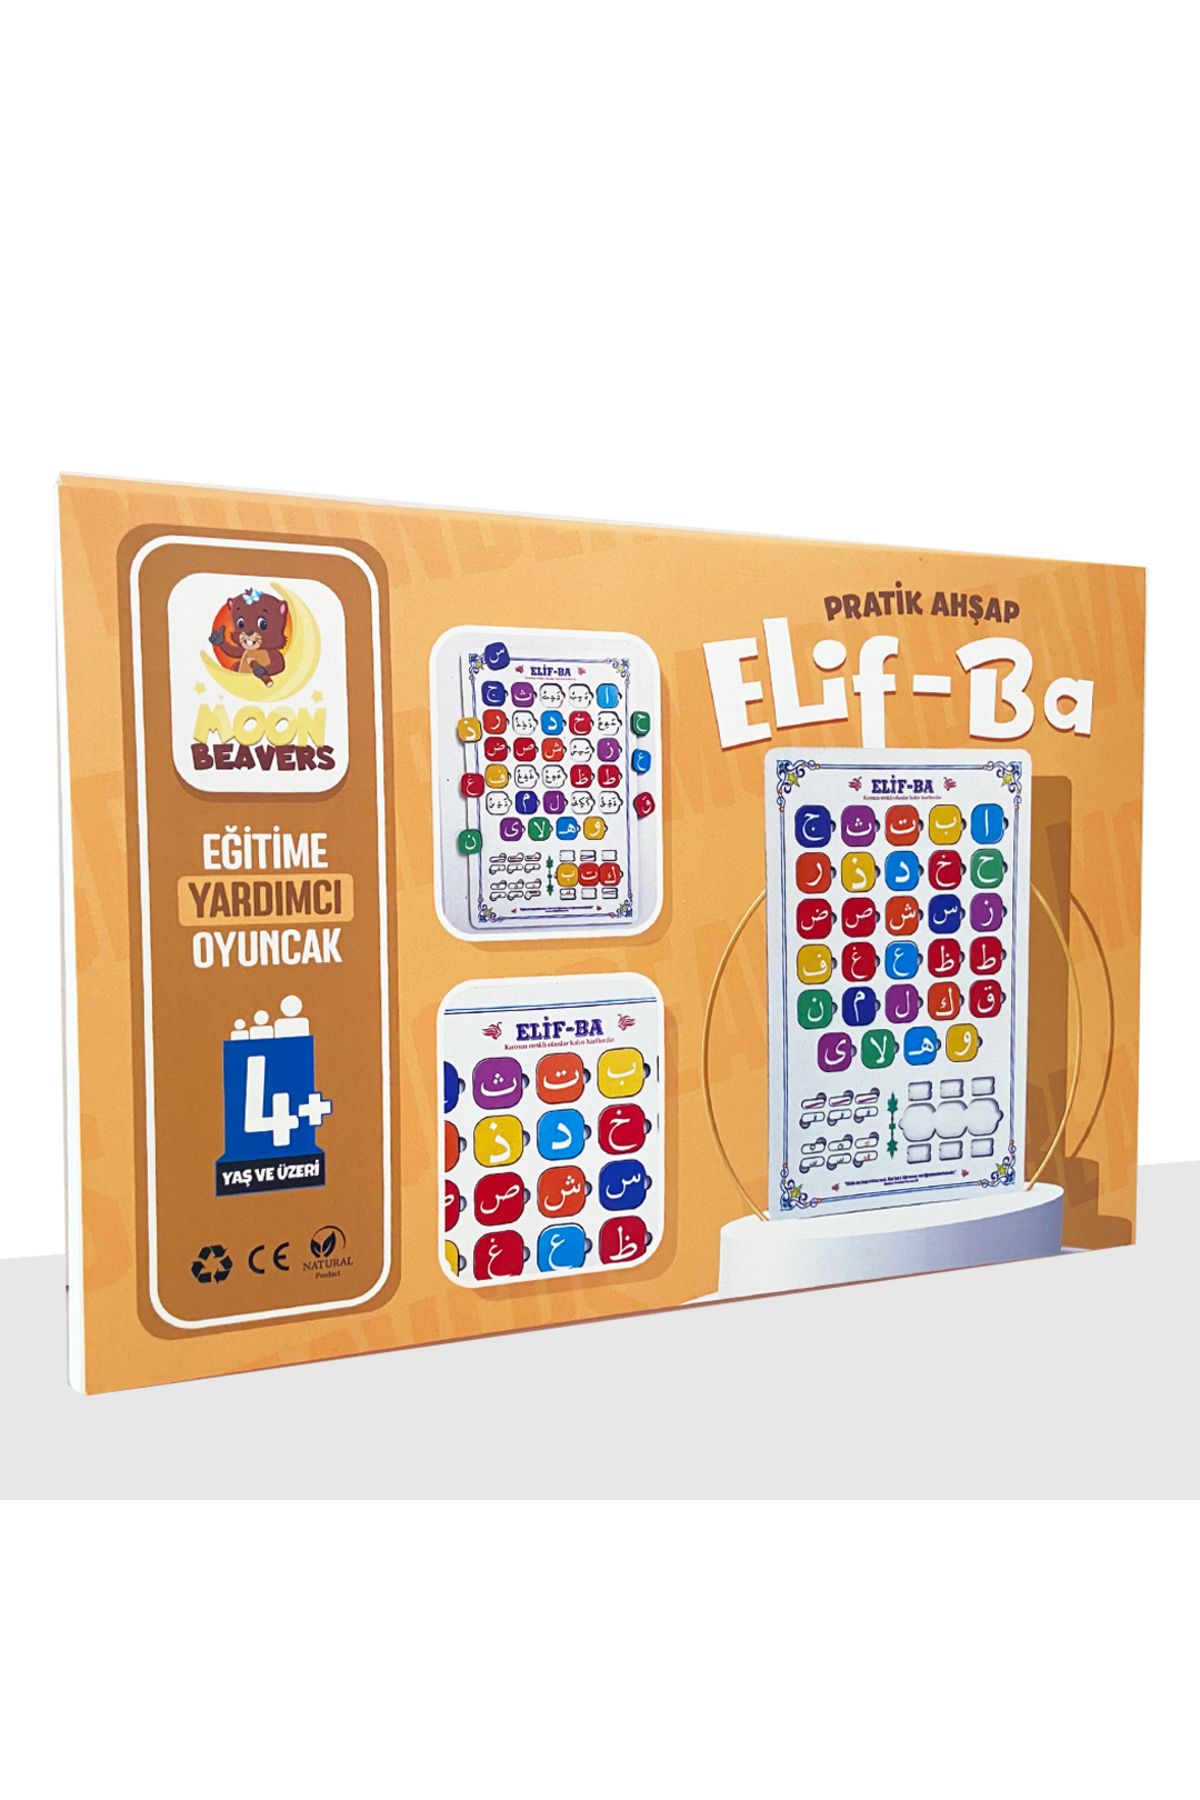 ihvanonline Ahşap Elif Ba Puzzle - Dini Yapboz - Eğitici Oyuncak - 4 Yaş ve Üzeri Eğitime Yardımcı Oyuncak